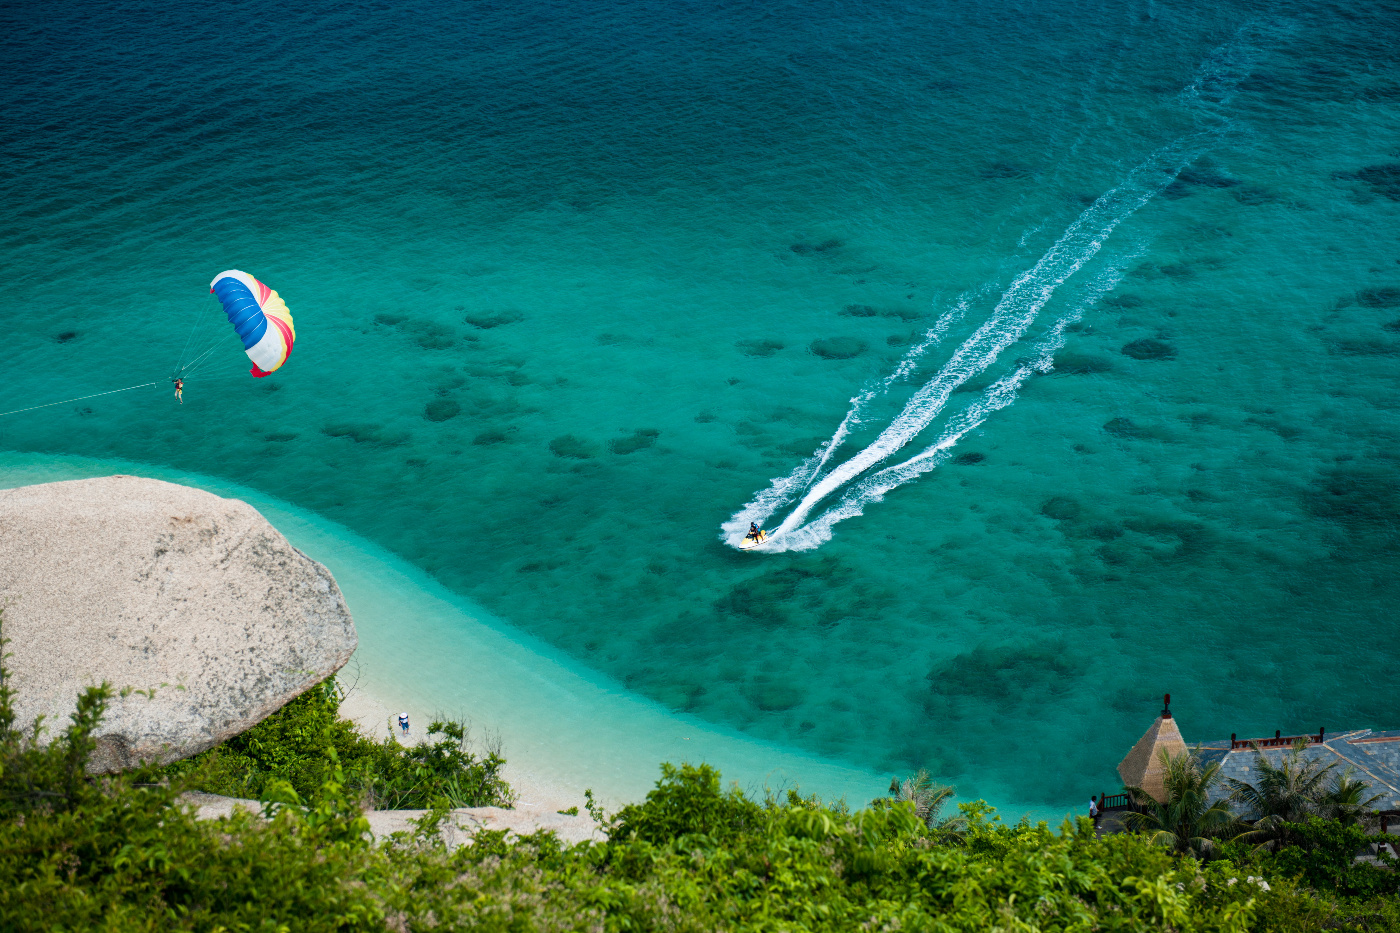 来分界洲岛玩转各种刺激海上娱乐项目，夏天就要浪浪浪!